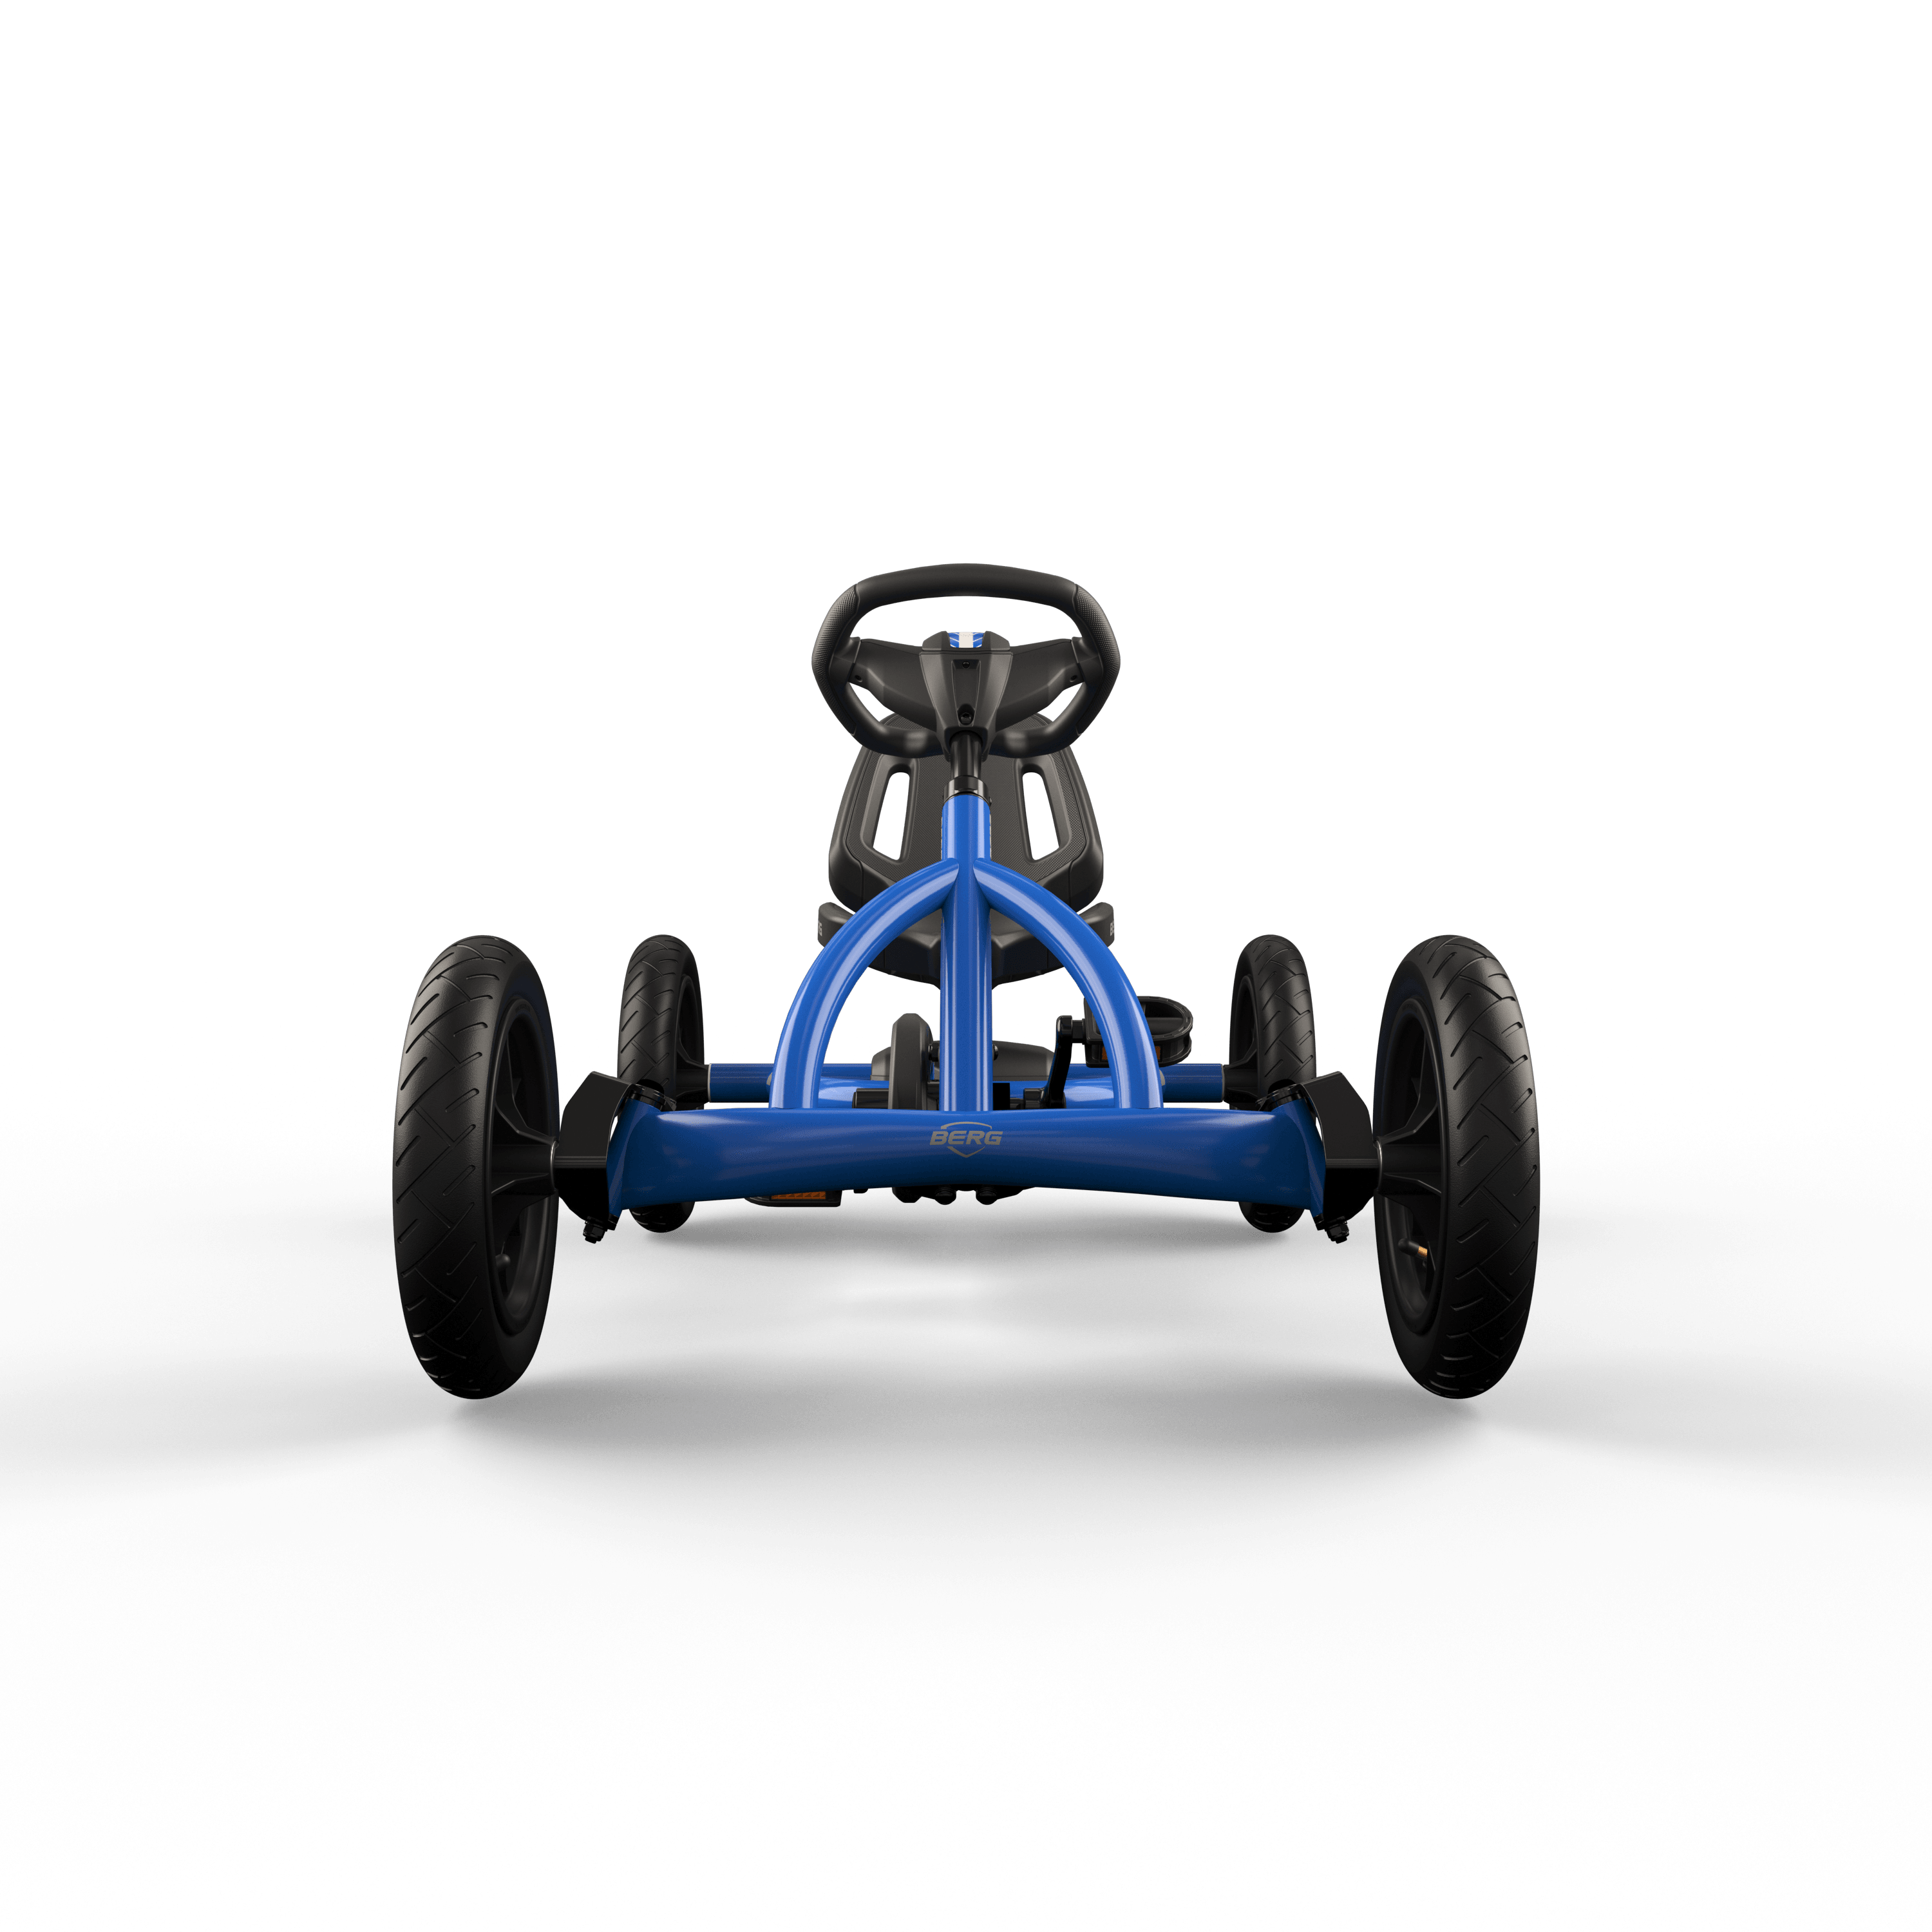 Berg Pedal Kart Buddy Blue | Pedal Go Kart, Ride On Toys for Boys and Girls, Go